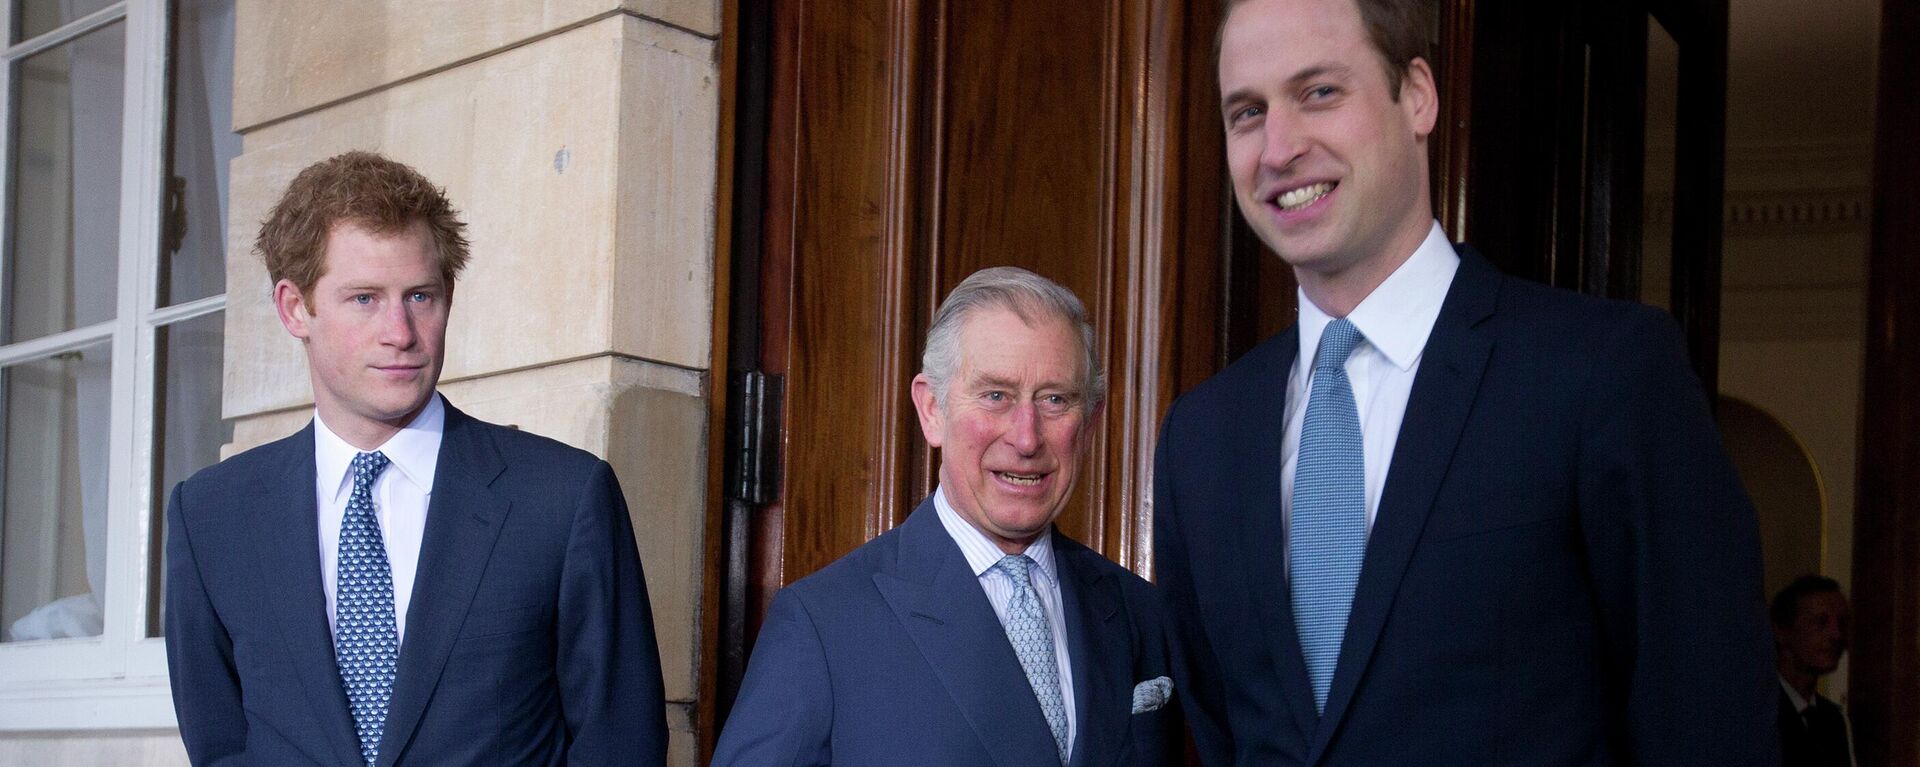 Irak Savaşı döneminde Prens Charles’ın, dönemin İngiltere Başbakanı Tony Blair’e silahlı kuvvetlerle ilgili yazdığı mektup 'kara örümcek' mektupları arasında en dikkat çekenlerden biri olmuştu. Charles 70. doğum gününü kutladığı 2018 tarihli bir röportajda siyasete müdahale etmediğini ve Galler Prensi olmakla Kral olmak arasındaki farkı gözettiğini söylemişti. - Sputnik Türkiye, 1920, 05.01.2023